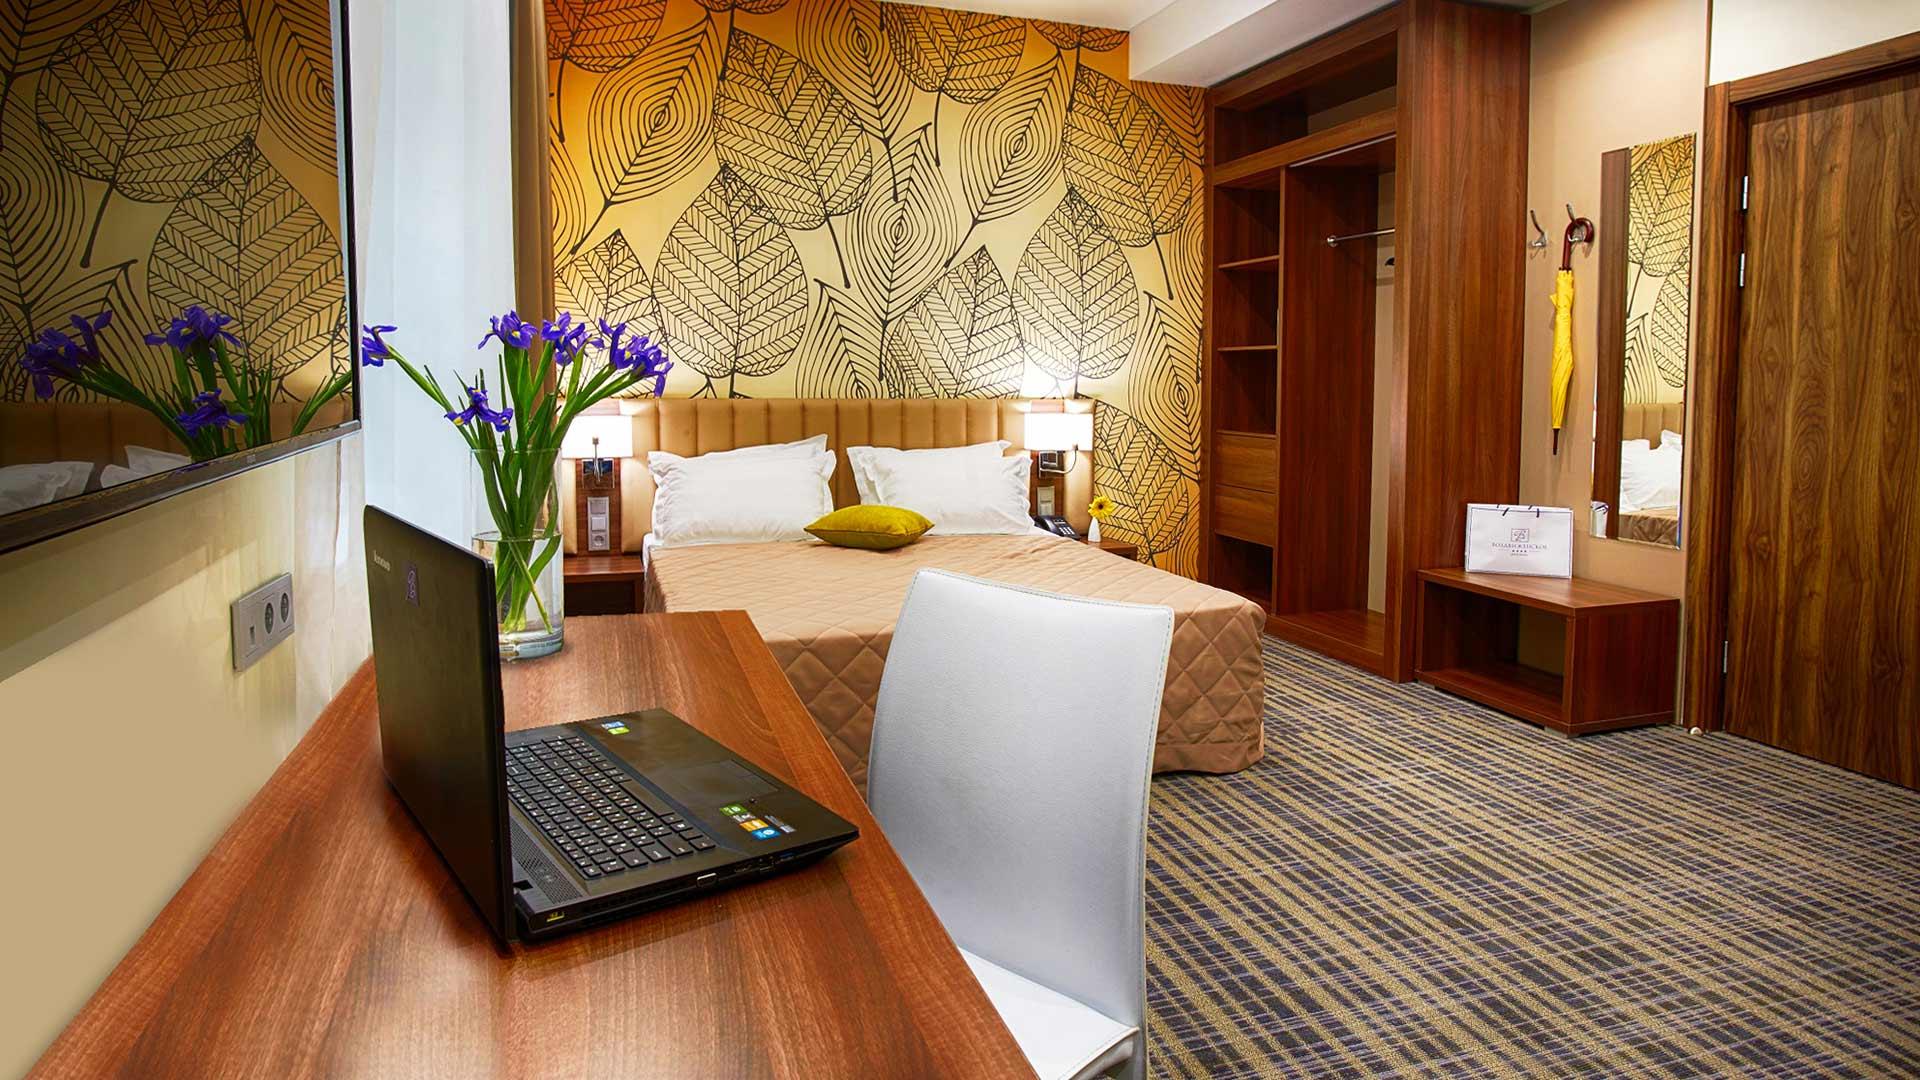 Отель Santa Sophia Hotel, Султанахмет: забронировать тур в отель, фото, описание, рейтинг